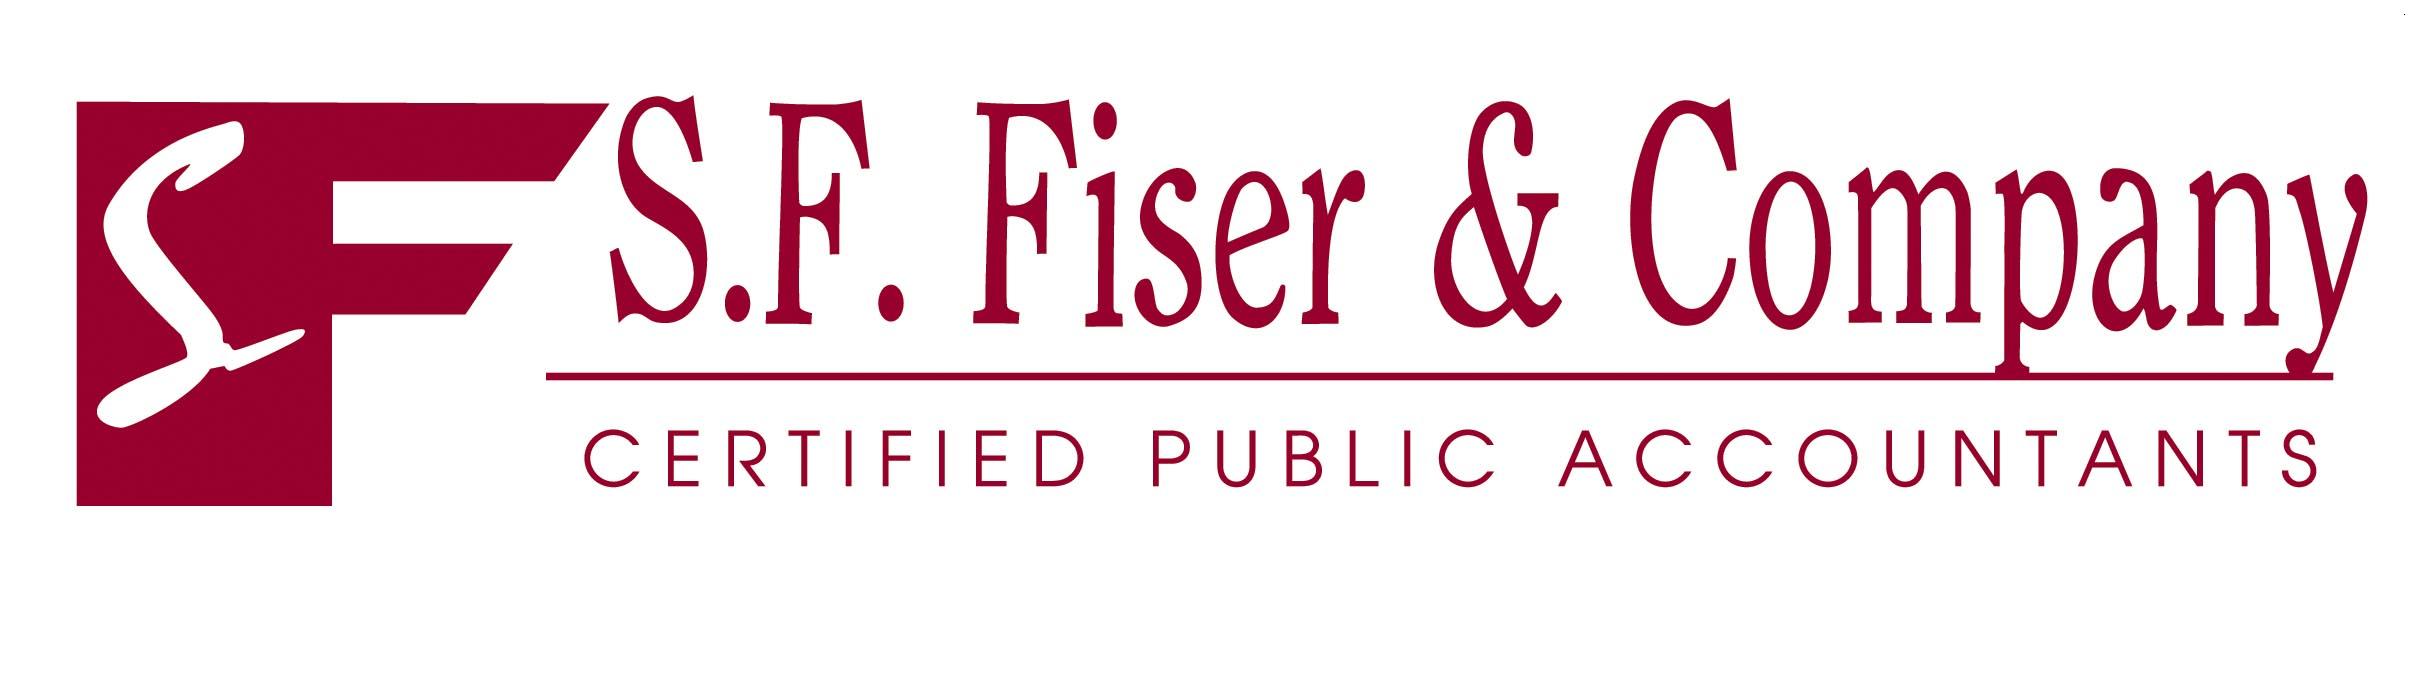 S.F. Fiser & Company, CPA's